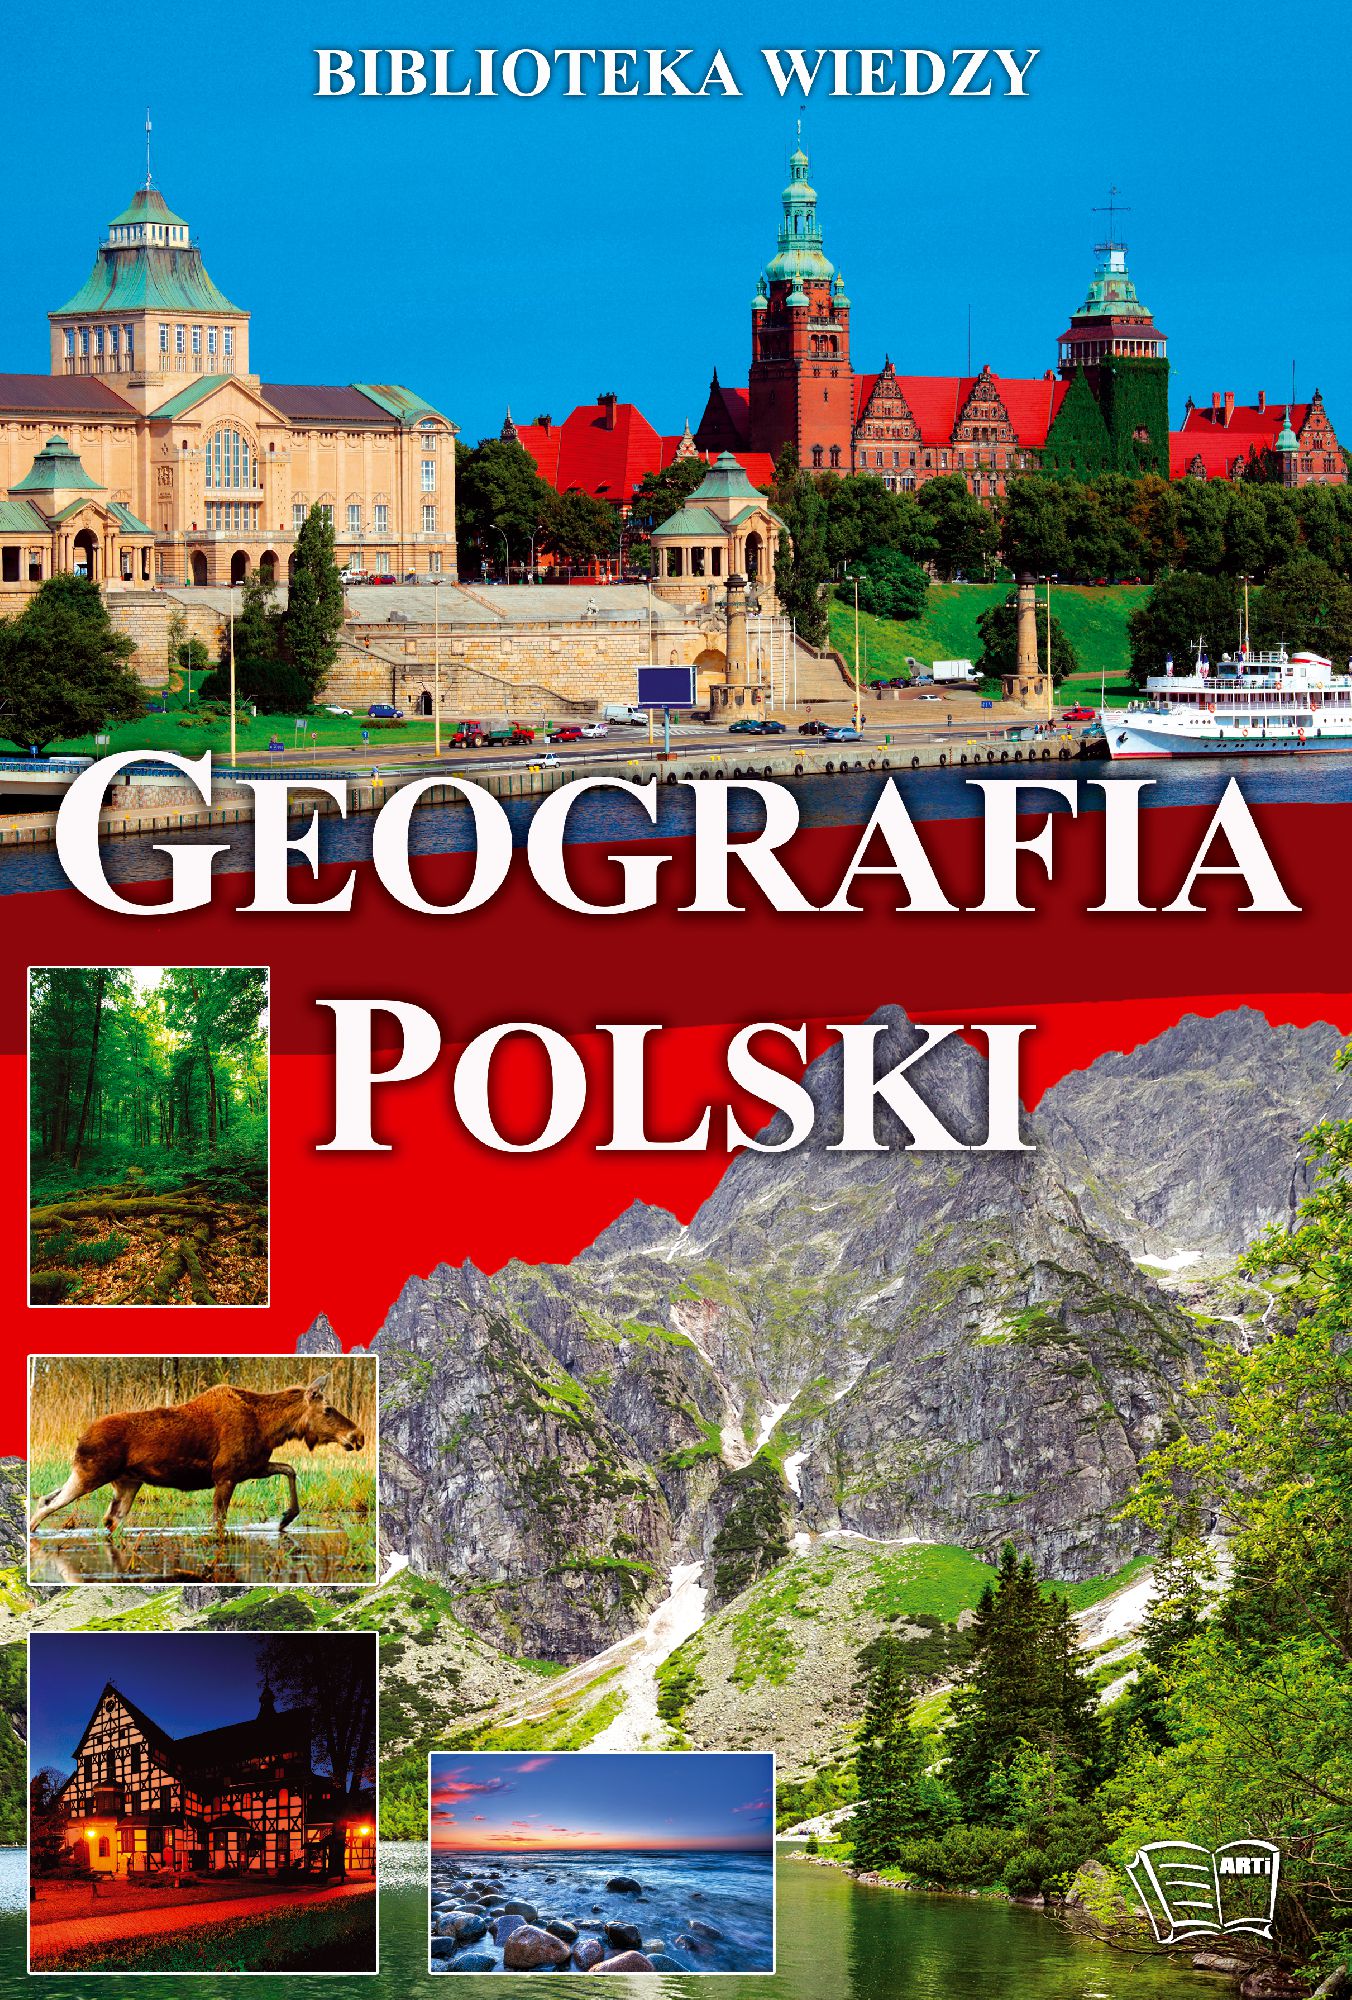 Biblioteka wiedzy - Geografia Polski (90700) 90700 (9788377400715)